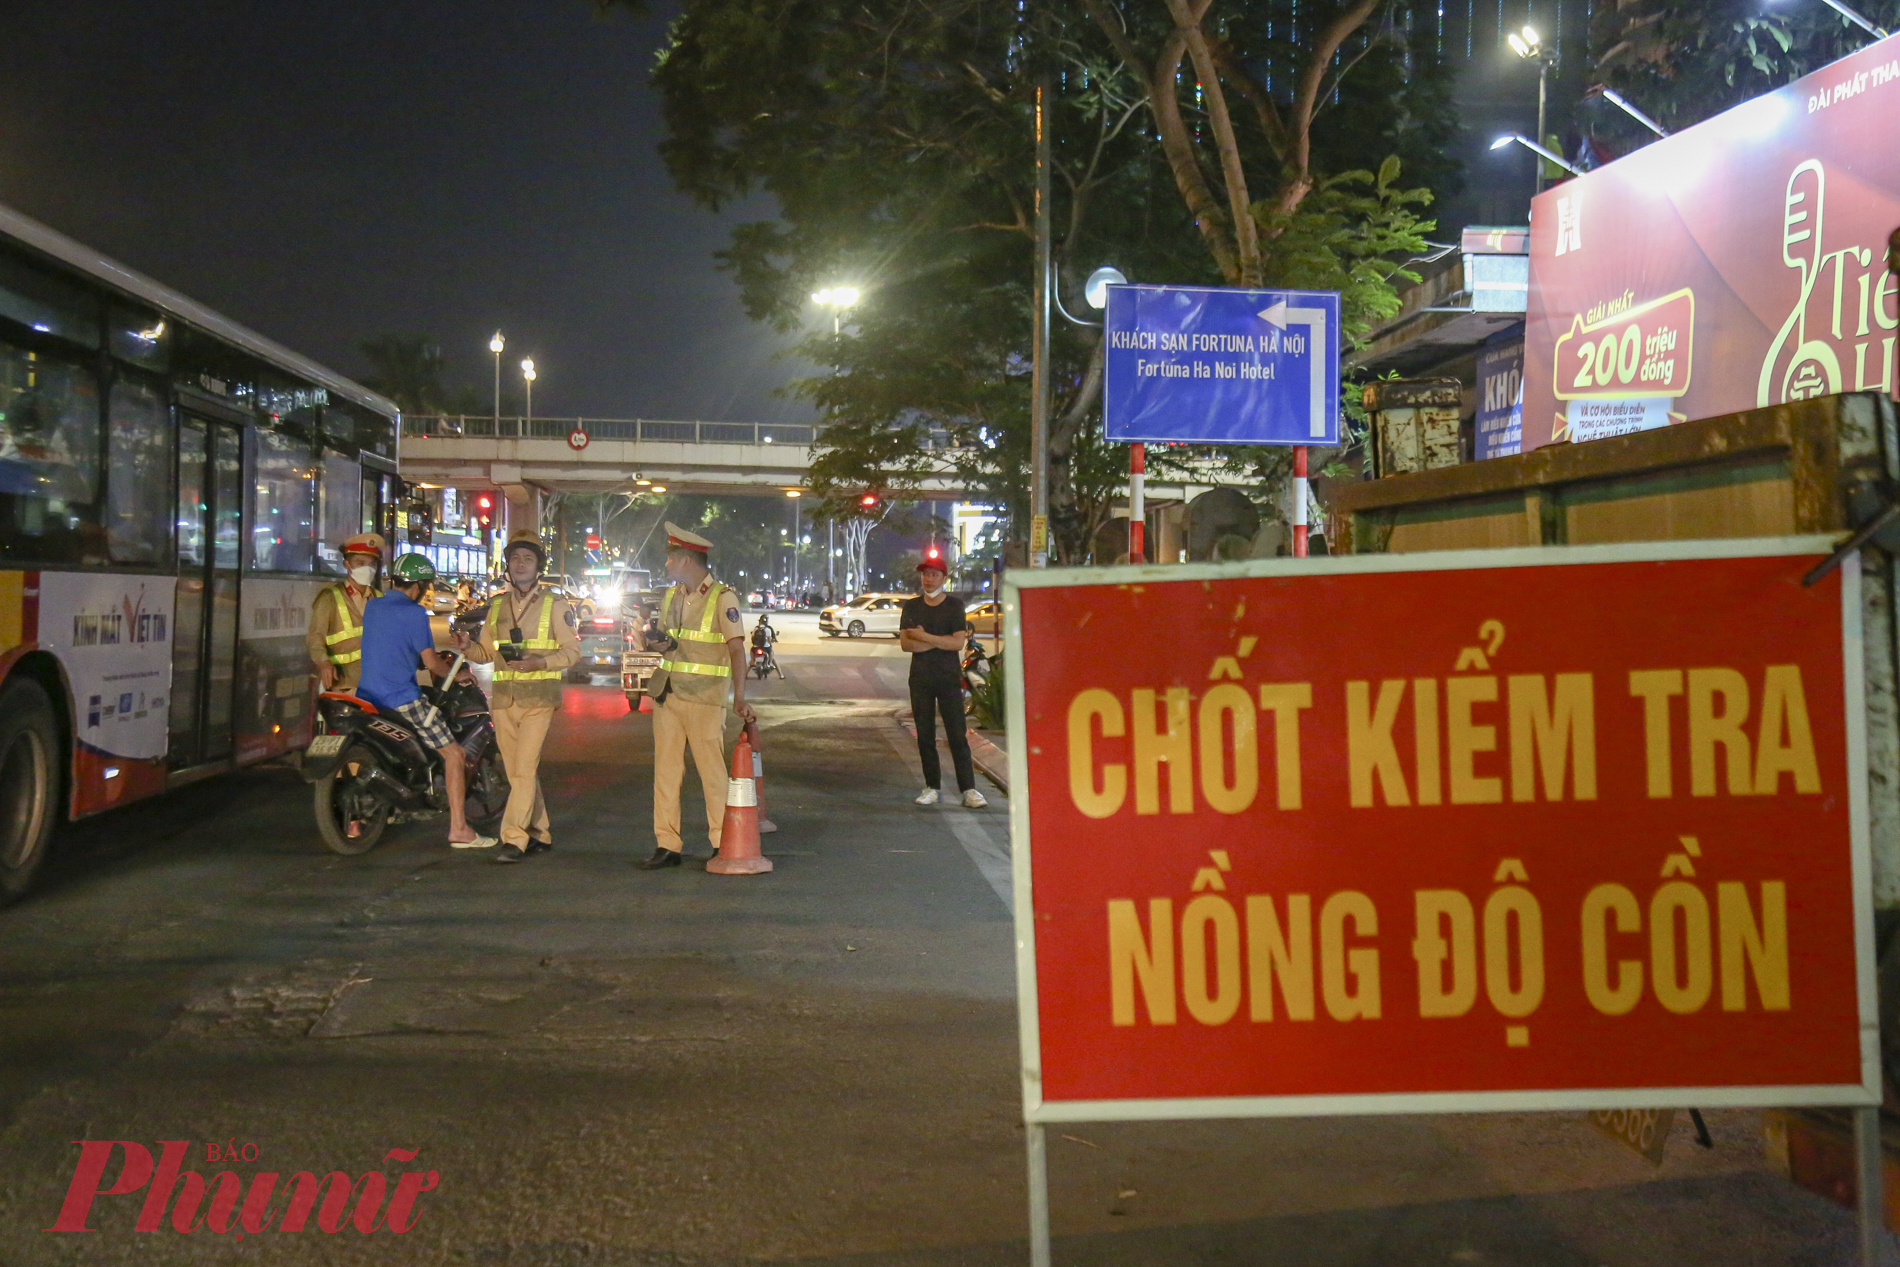 Tối ngày 28/4, Tổ công tác đội CSGT số 3 thuộc phòng CSGT Thành phố Hà Nội tiến hành lập chốt kiểm tra tại đường Huỳnh Thúc Kháng (quận Đống Đa, Hà Nội) kiểm tra, xử lý nồng độ cồn. 